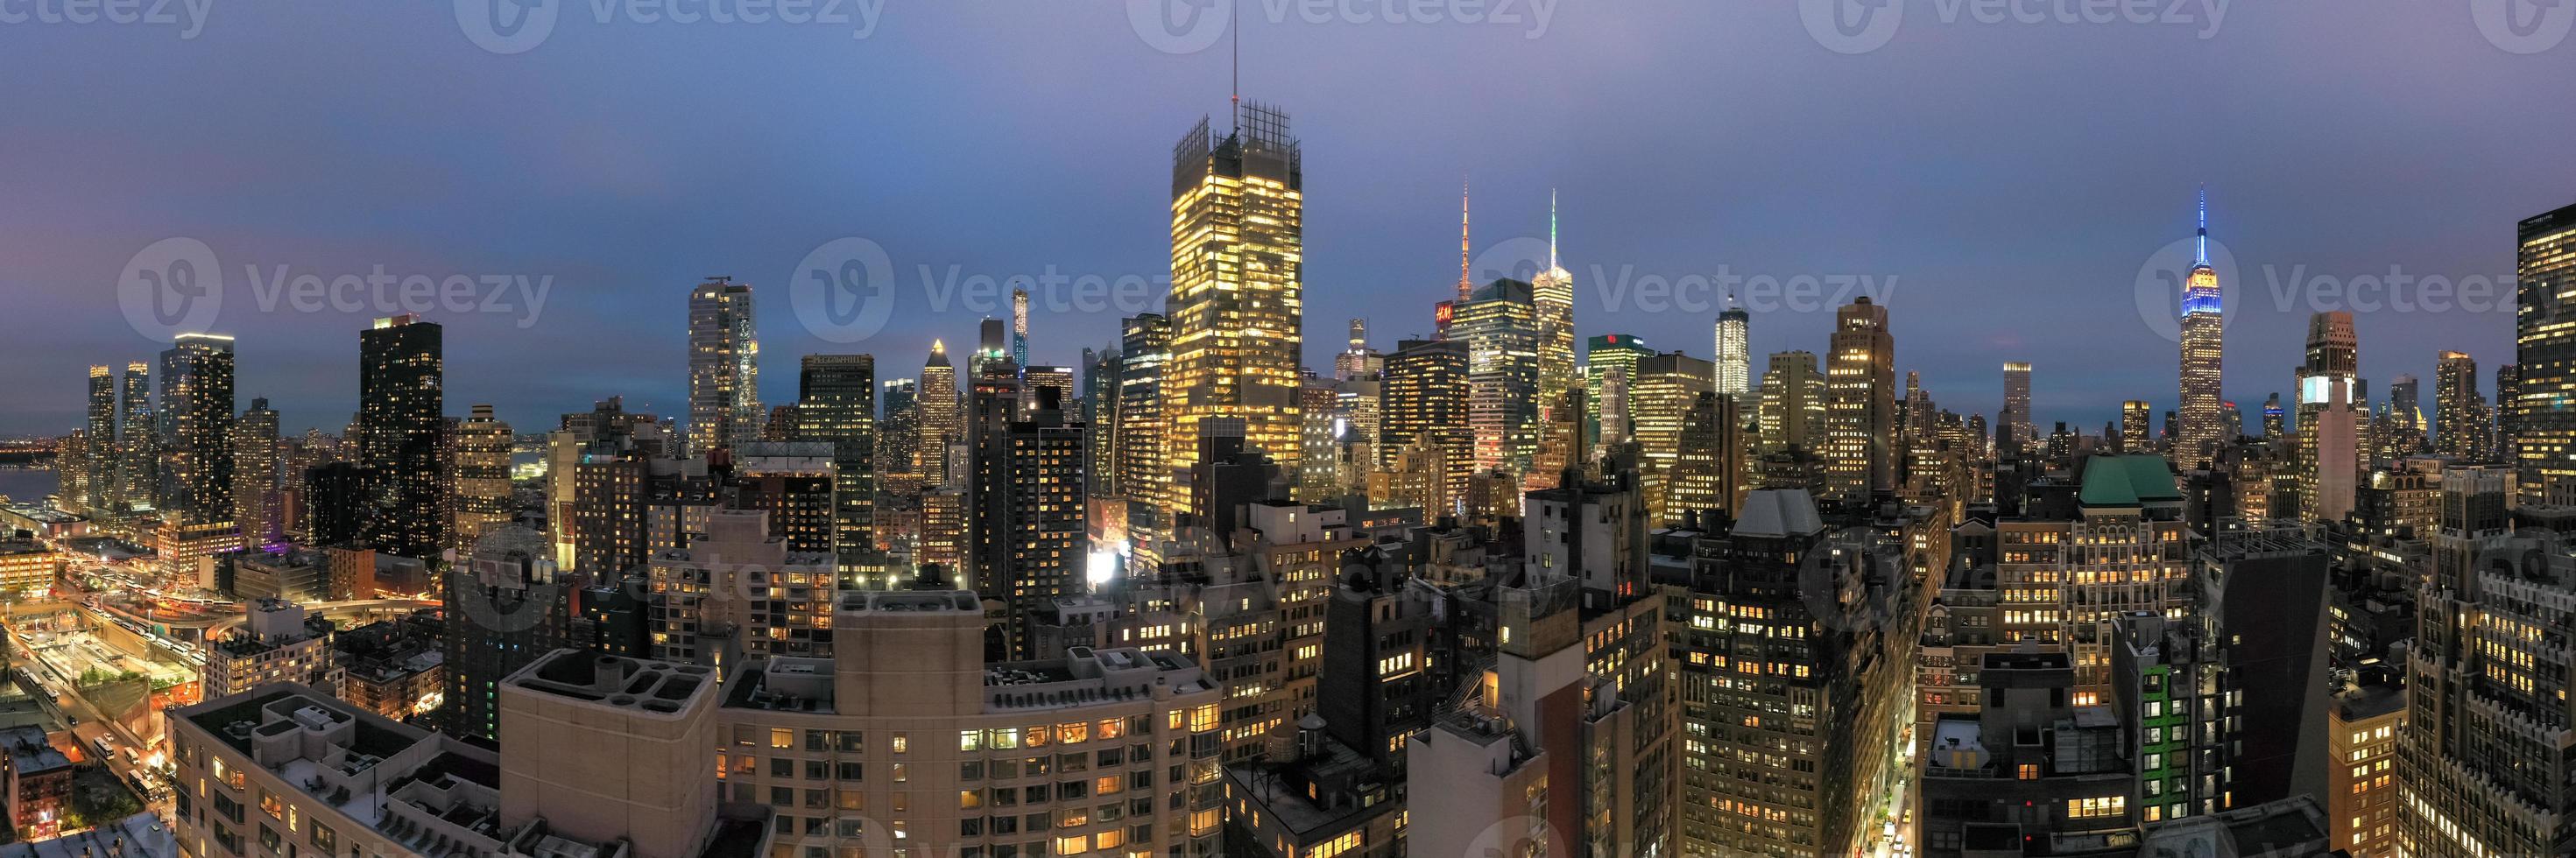 ny york stad - Maj 9, 2019 - panorama- se av midtown manhattan skyskrapor i ny york stad under på skymning. foto